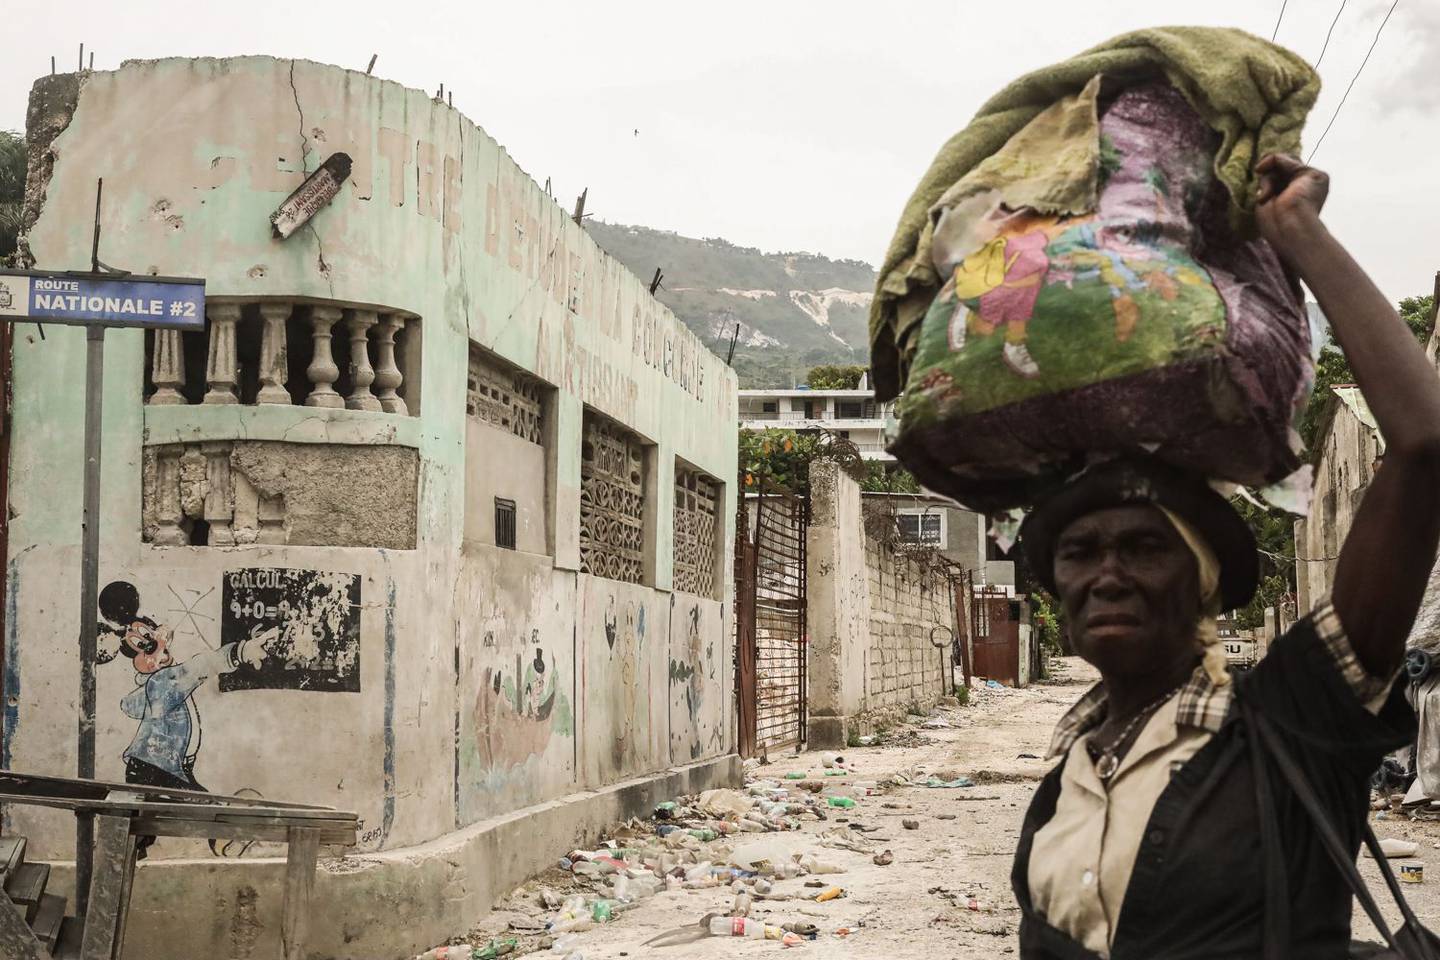 Un peatón cruza una calle llena de basura en el barrio de Martissant de Puerto Príncipe, Haití, el martes 17 de agosto de 2021. Haití, la nación más pobre del hemisferio occidental, ha estado luchando con la escasez de alimentos, la violencia generalizada y el caos político tras el asesinato del presidente Jovenel Moise el mes pasado. Fotógrafo: Jonathan Alpeyrie/Bloomberg